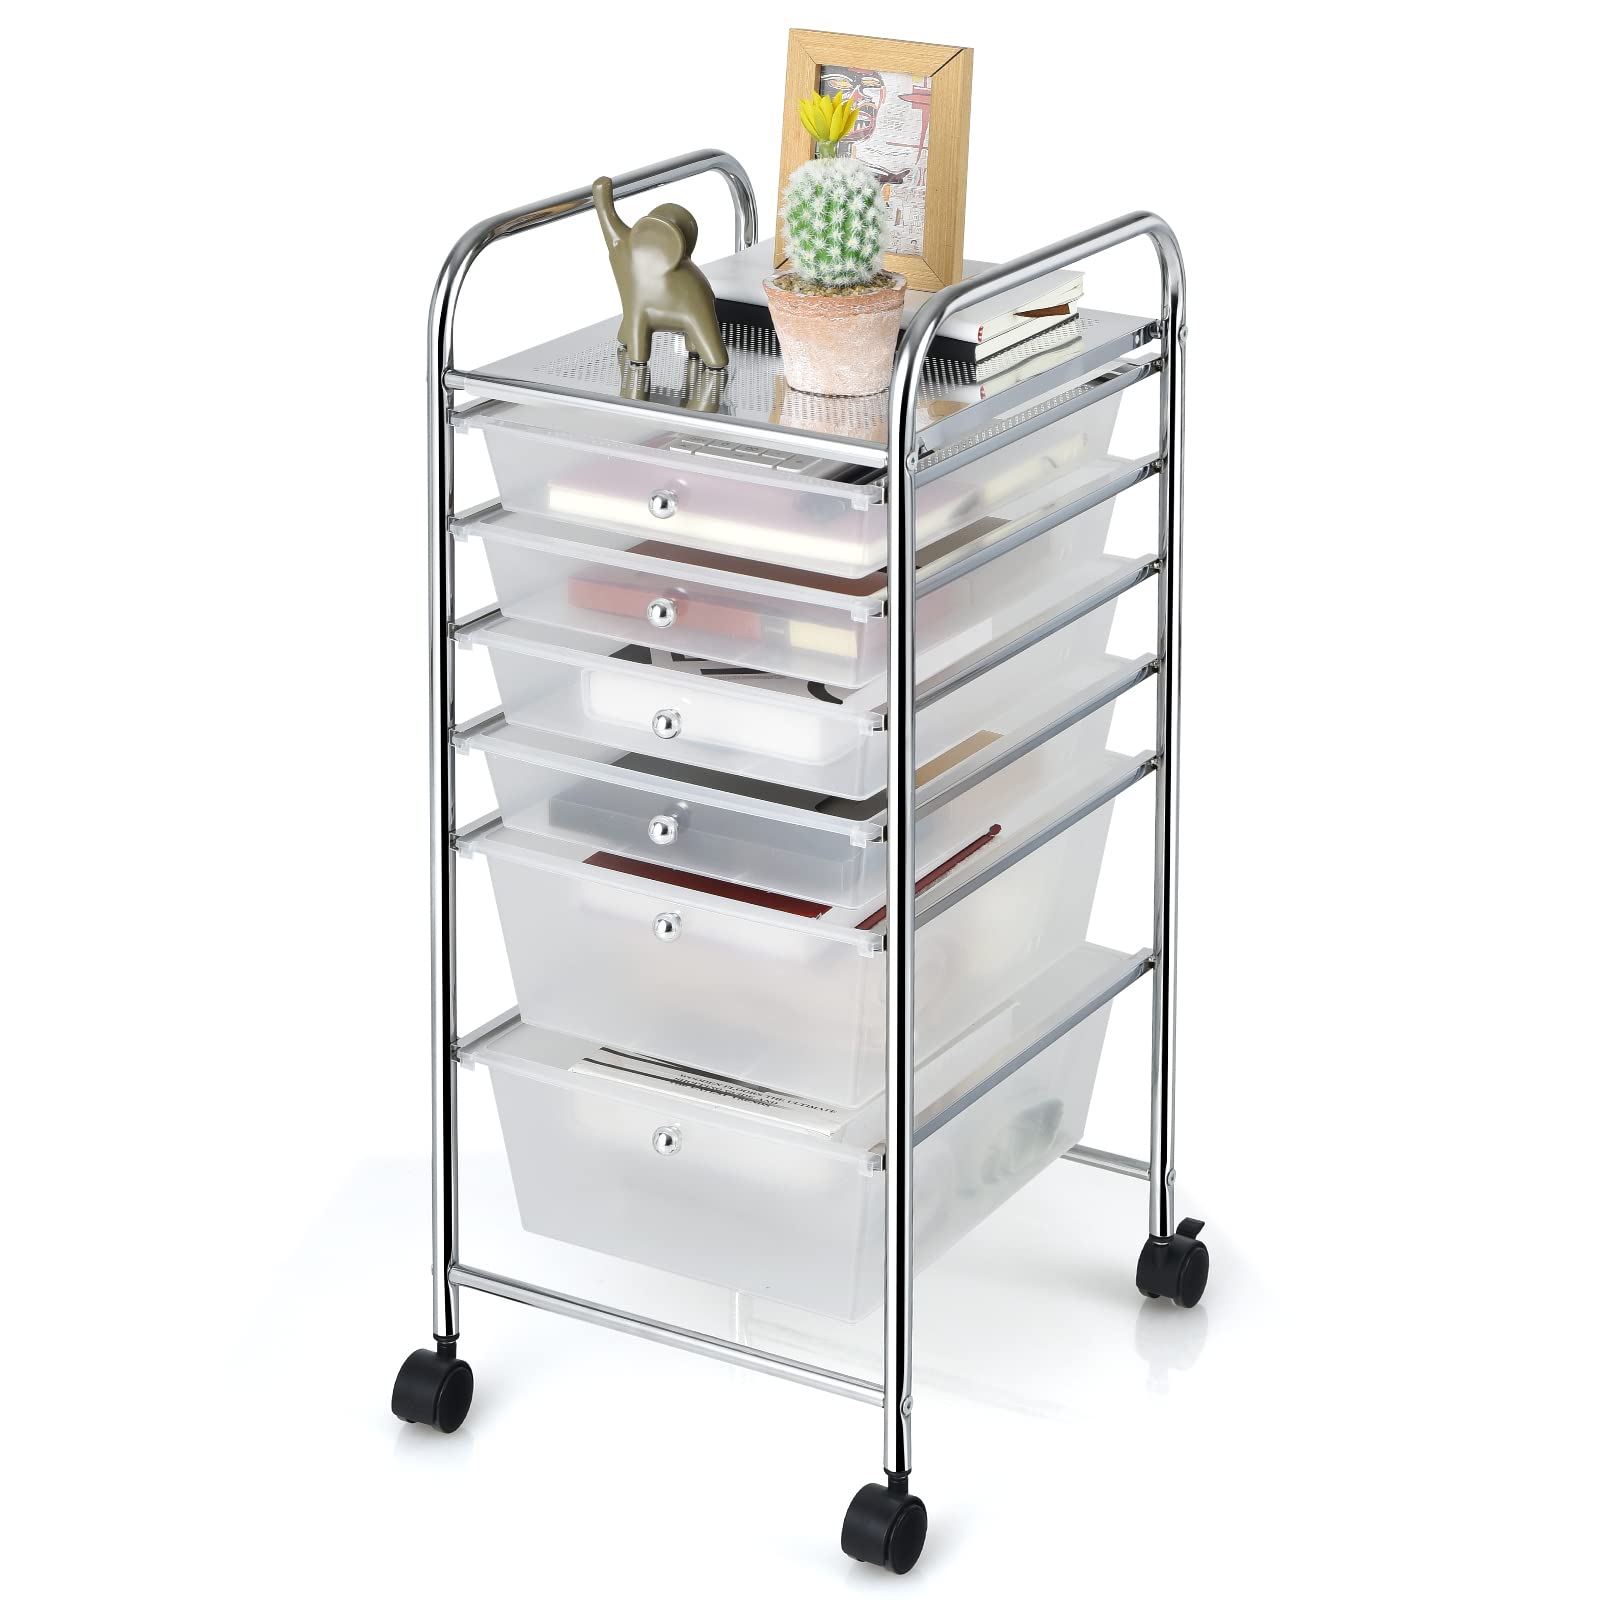  6 Storage Drawer Cart Rolling Organizer Cart, Clean - Giantex